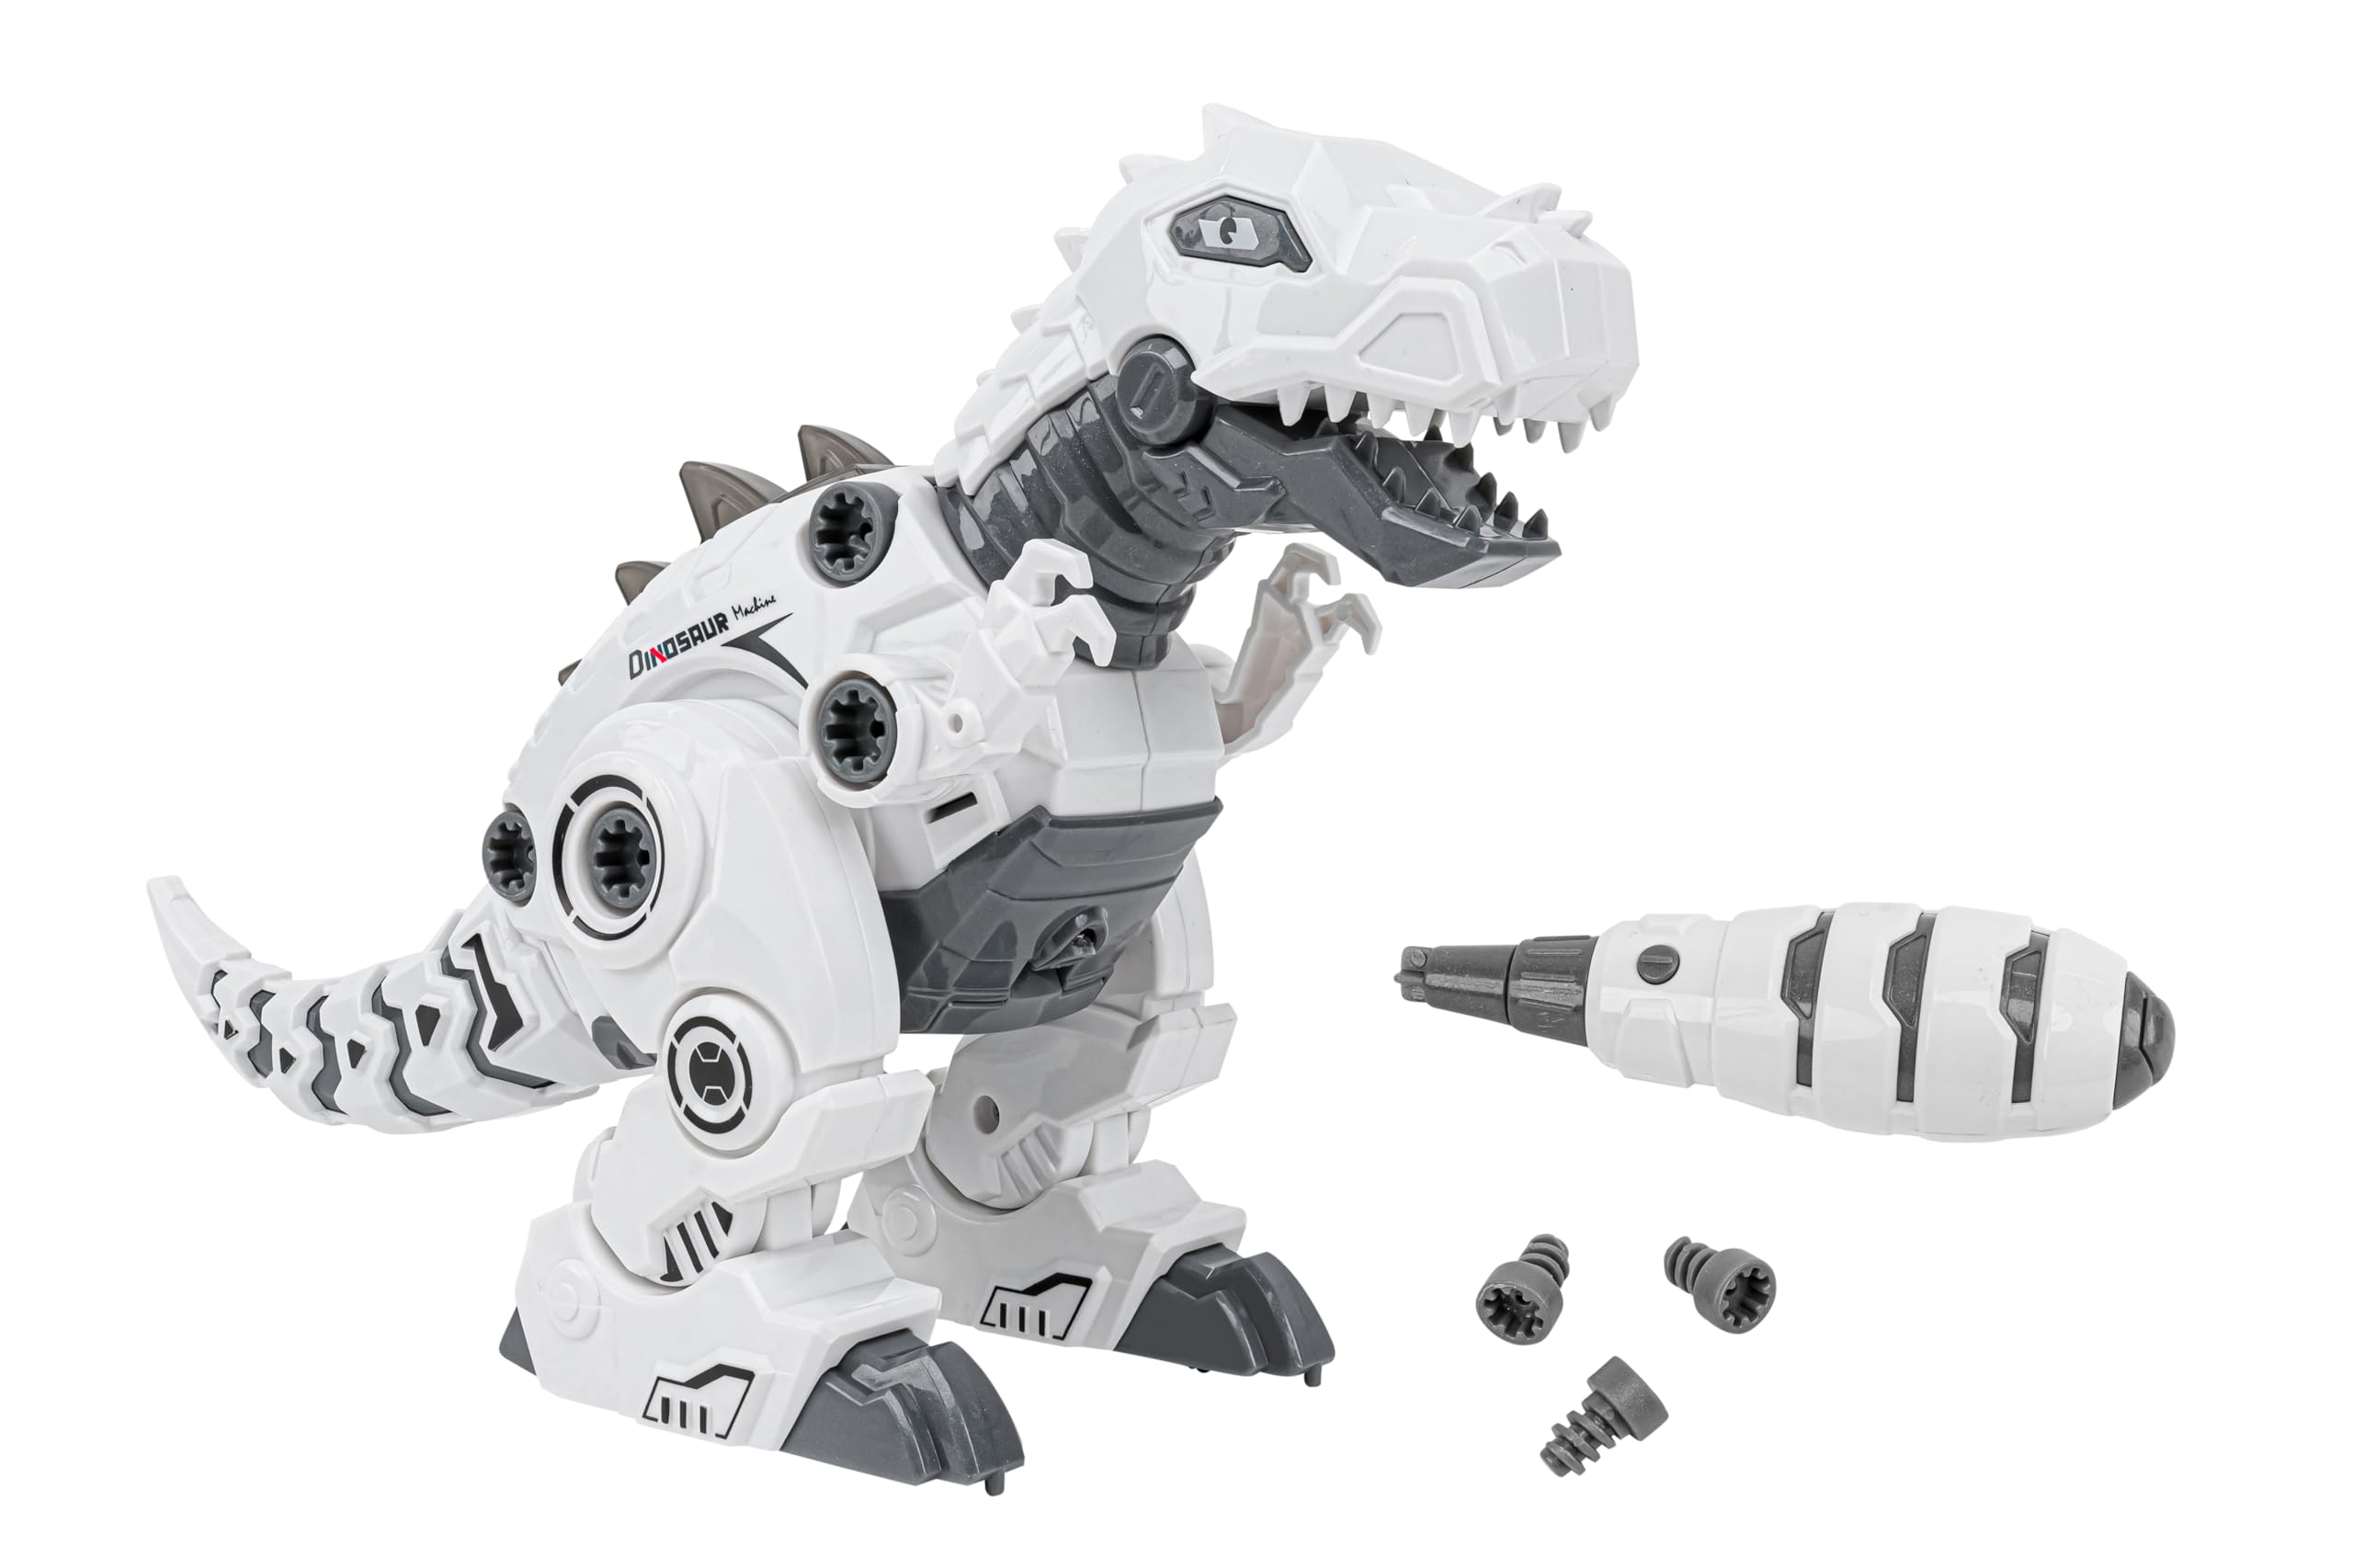 Bauen Sie Ihren eigenen Dinosaurier-Roboter - T-Rex Walking - Schraubendreher und Schrauben enthalten - Mit Licht und Sound - Batteriebetrieben - Kinder 3 Jahre - Globus Toys - WToy - 41669